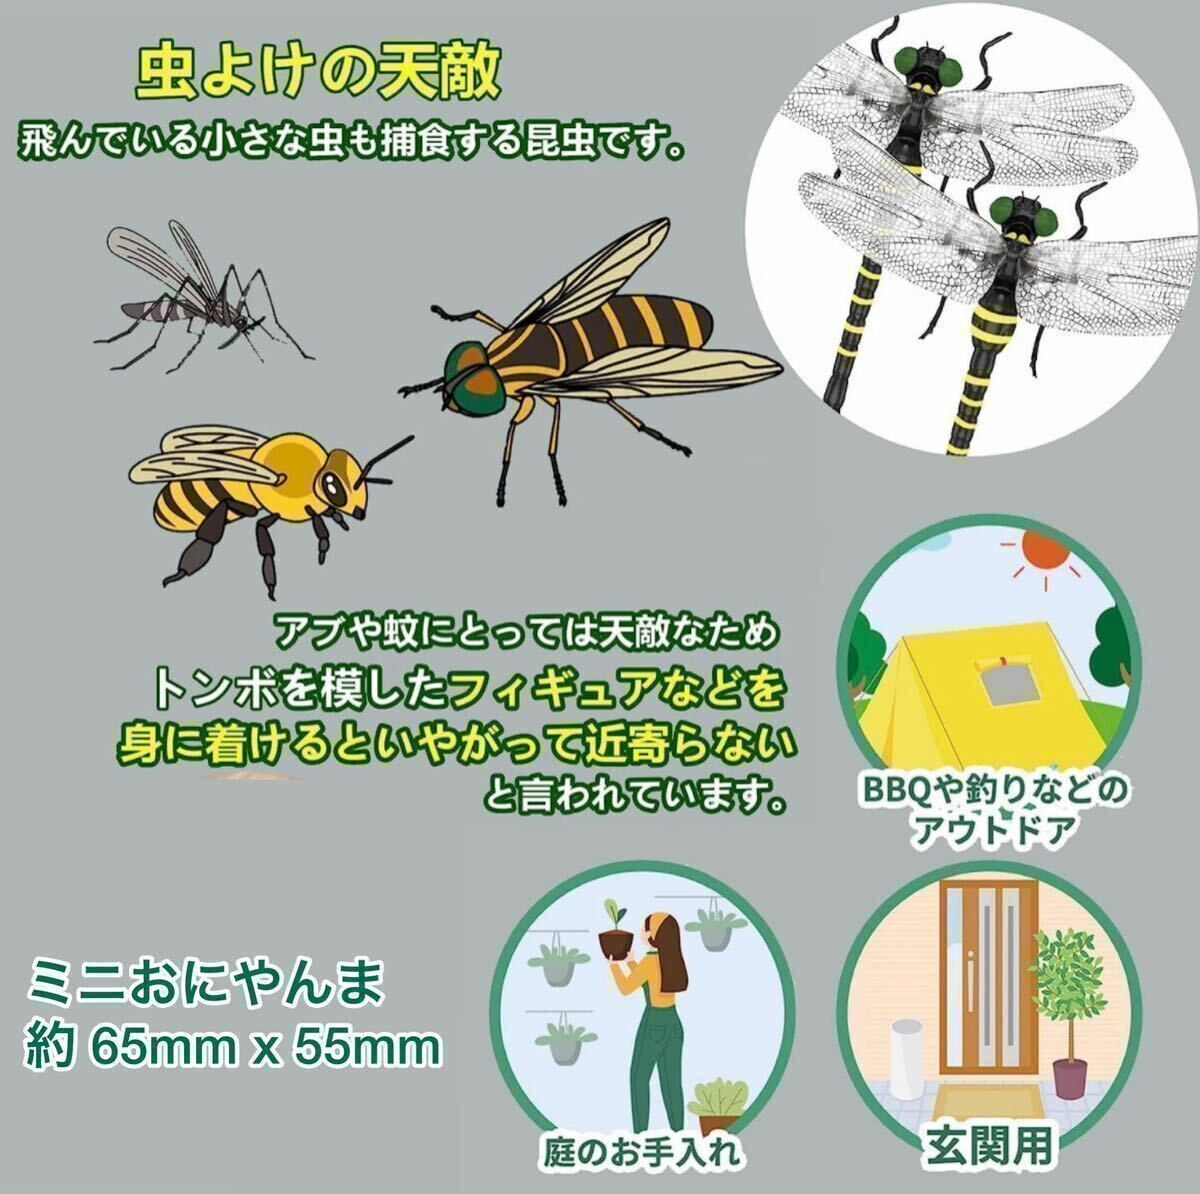  супер-скидка -oniyama стрекоза безопасность булавка имеется насекомое животное репеллент ....... модель дом игрушка PVC интерьер *3 шт 